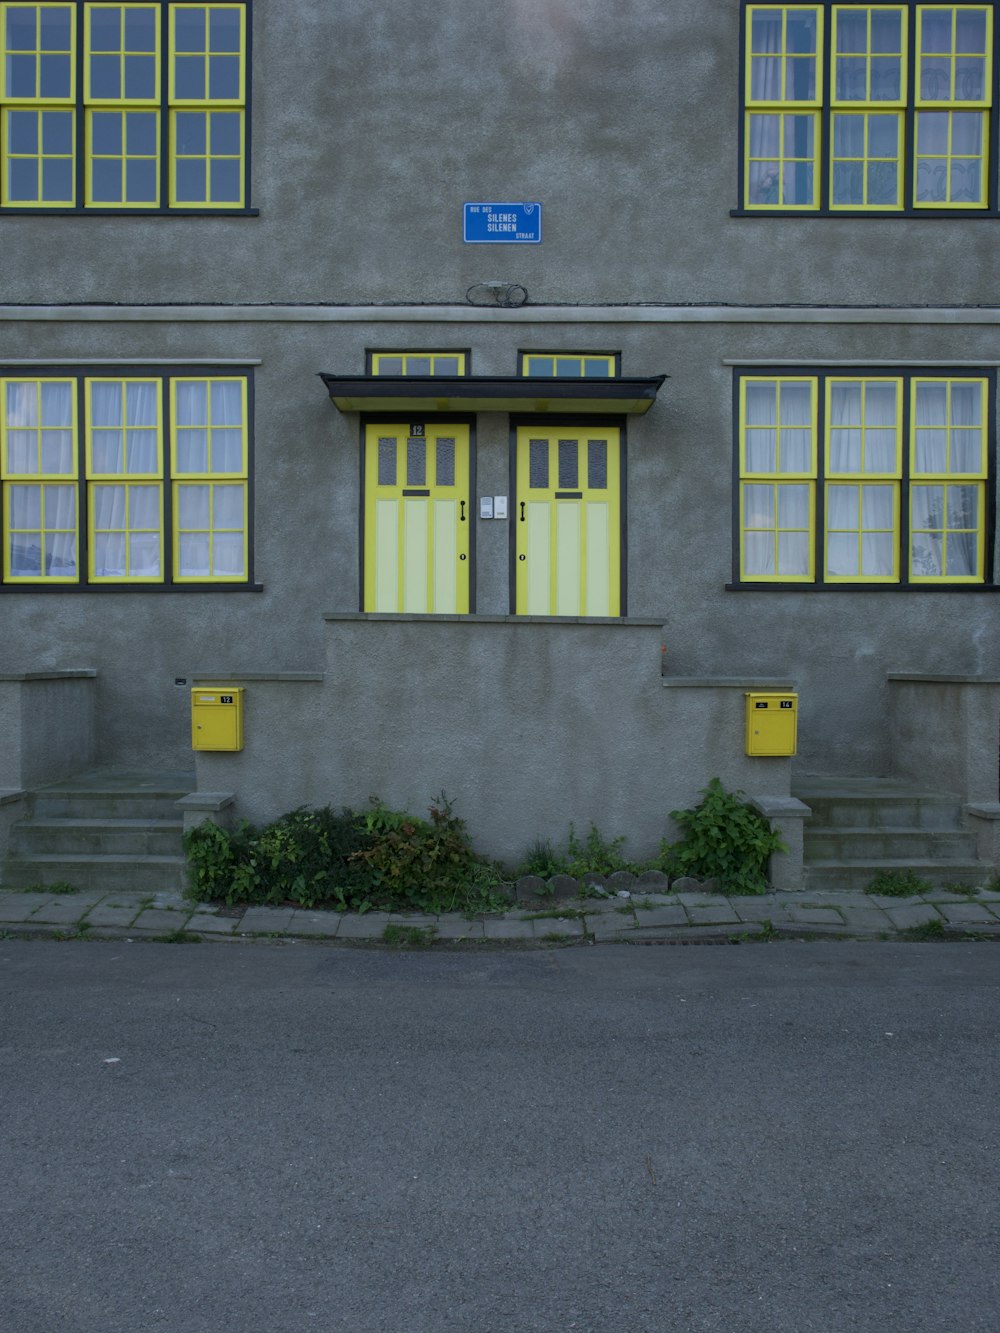 grey concrete building with blue wooden door